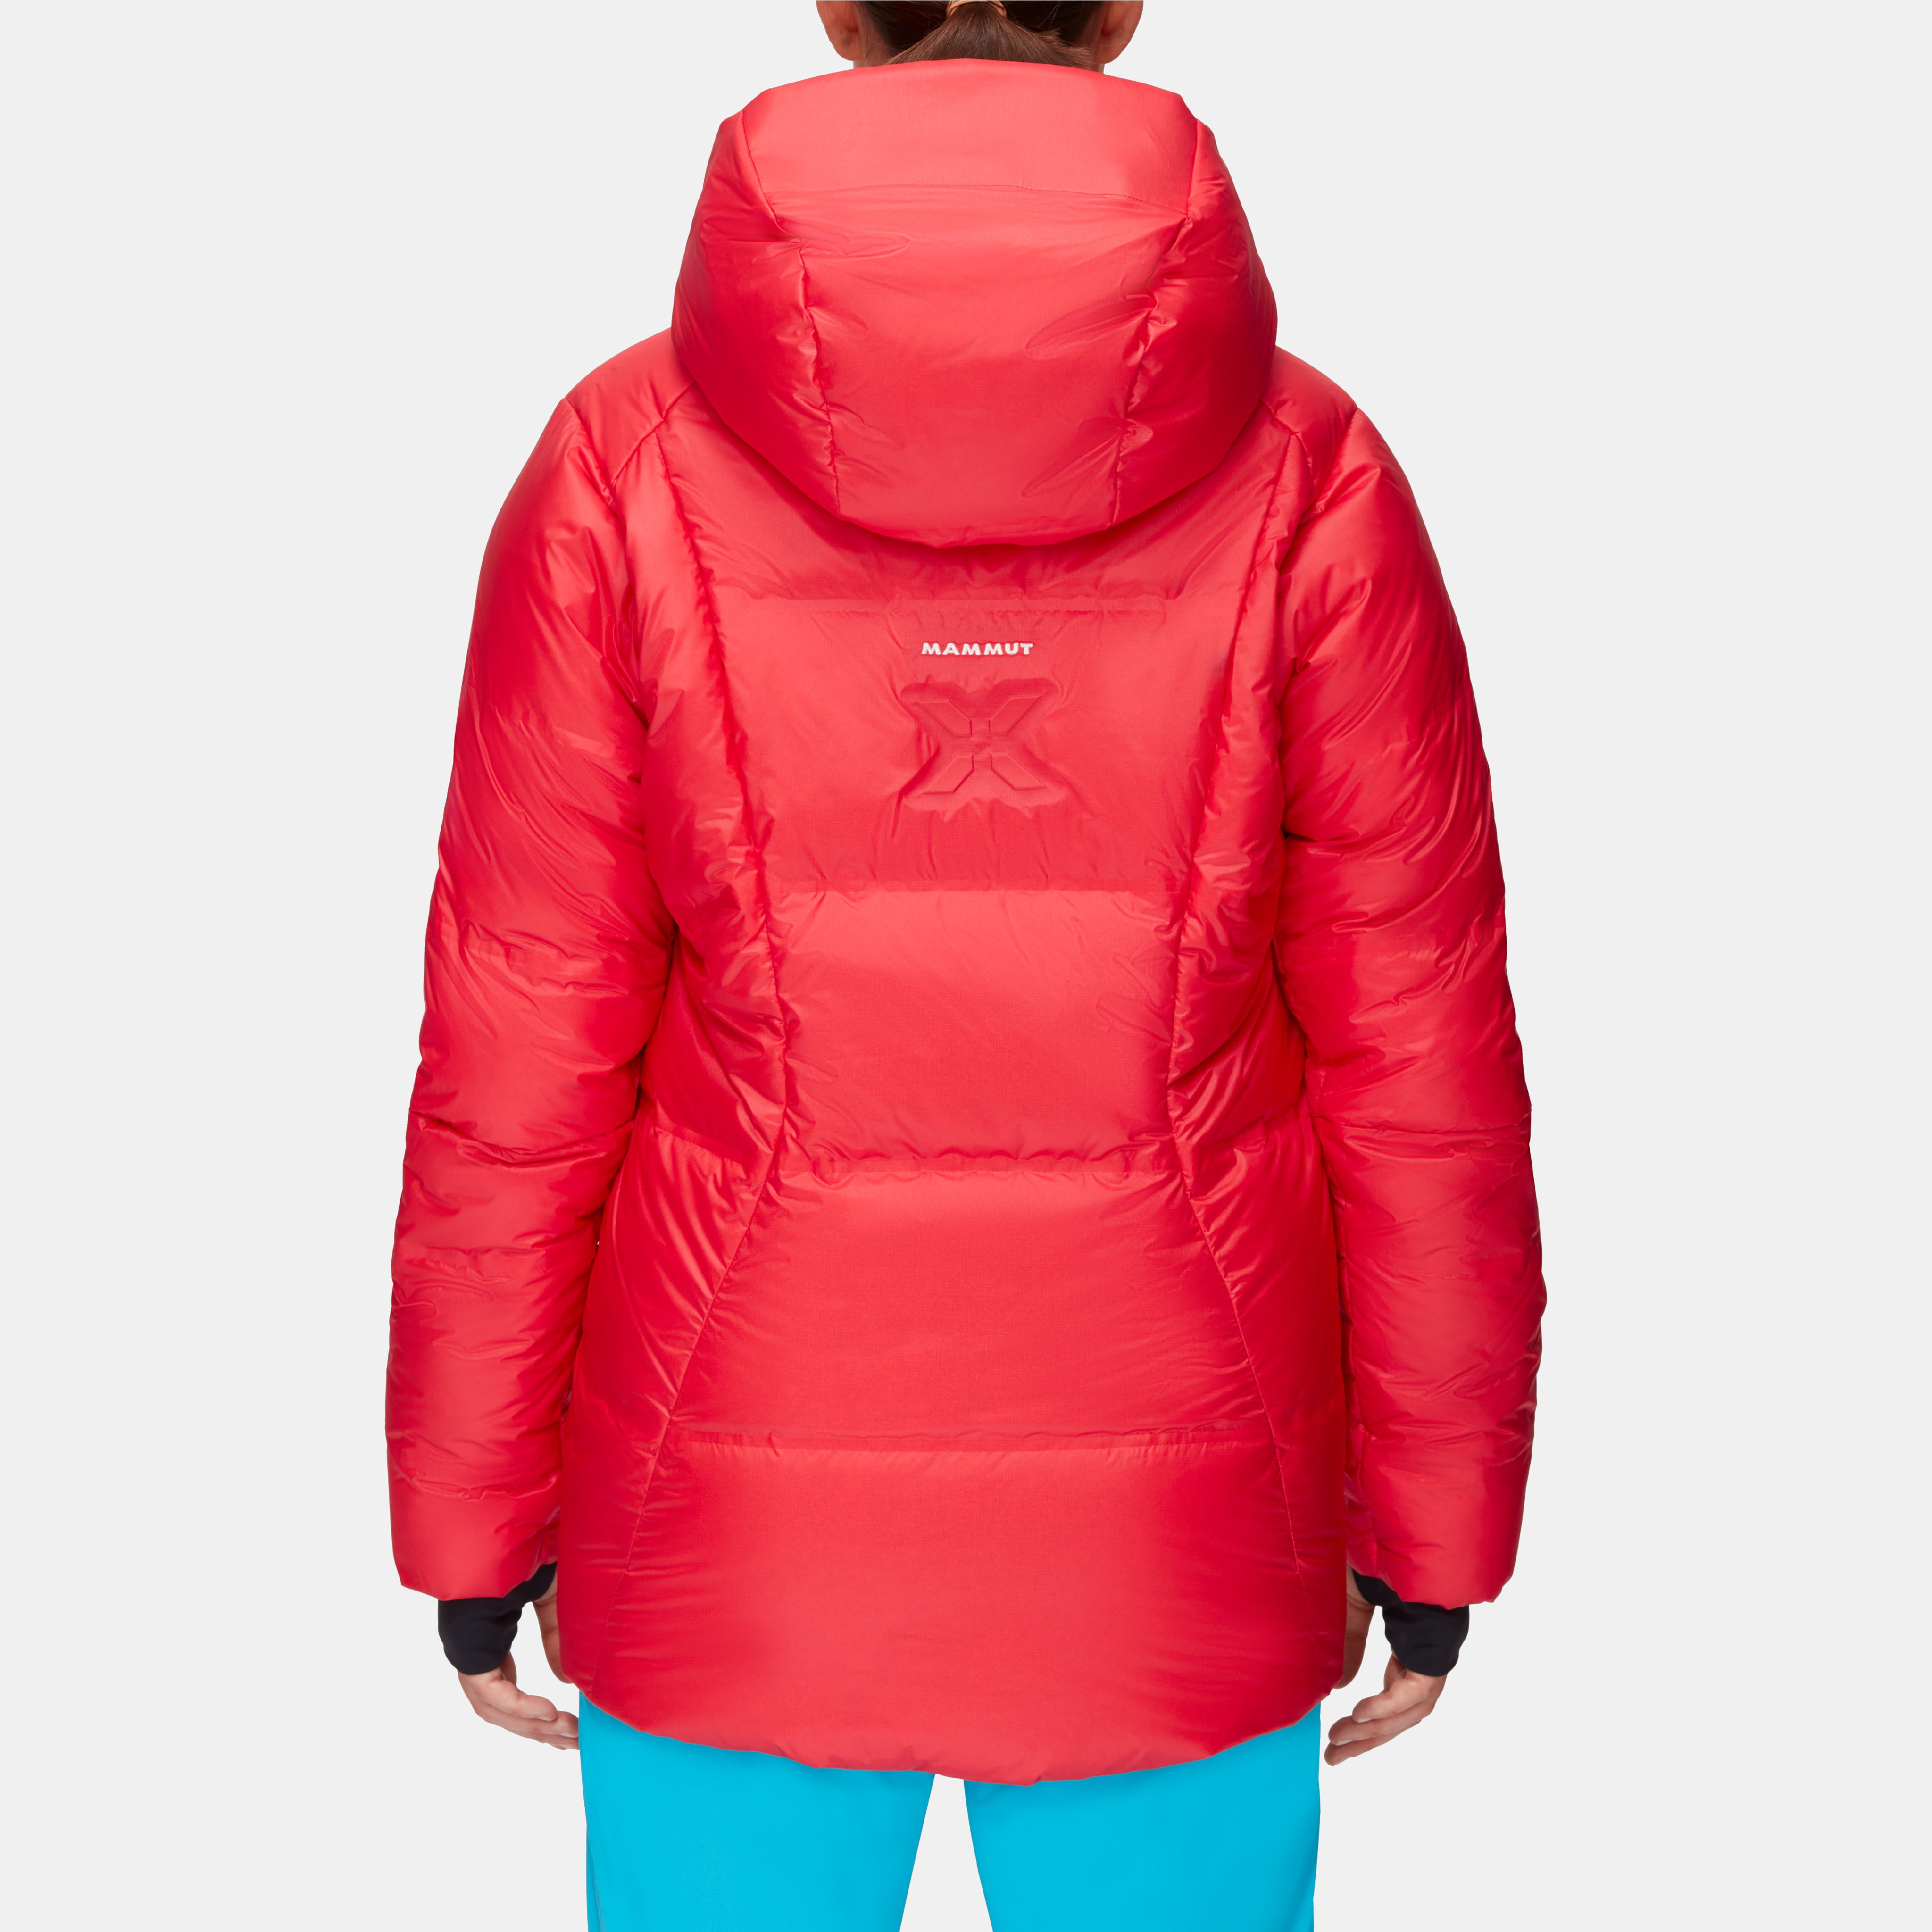 Eigerjoch Pro IN Hooded Jacket Women product image